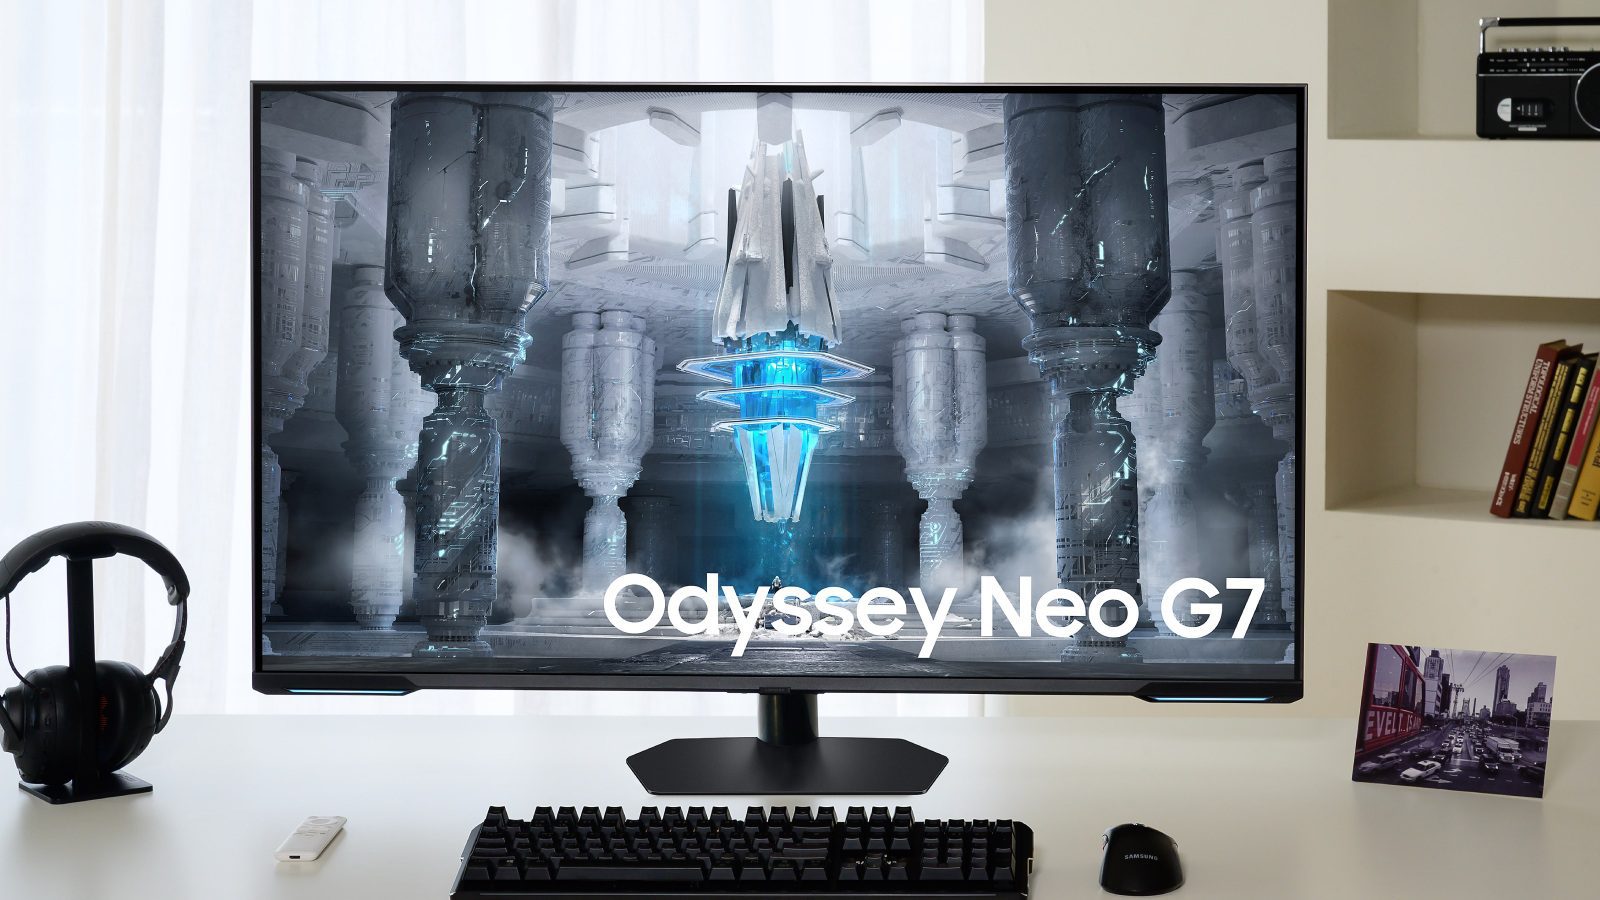 Samsung Odyssey Neo G7 с 43-дюймовым мини-светодиодным монитором с разрешением 4K и частотой 144 Гц дебютировал за 1399 евро.